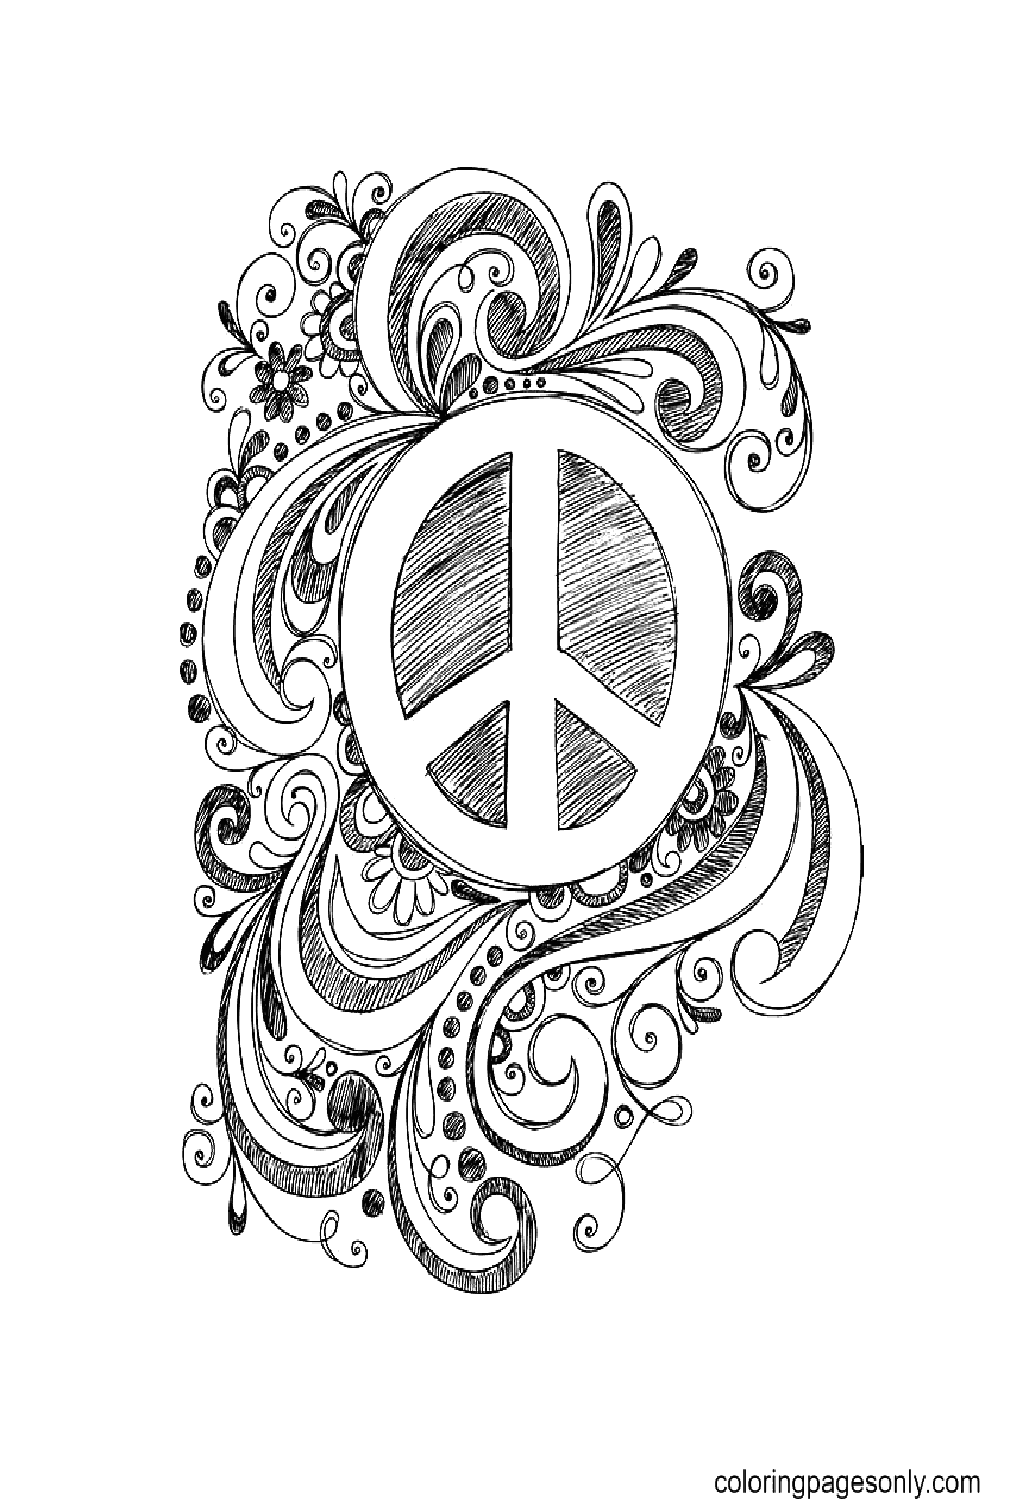 Kostenloses druckbares Friedenszeichen vom Internationalen Tag des Friedens